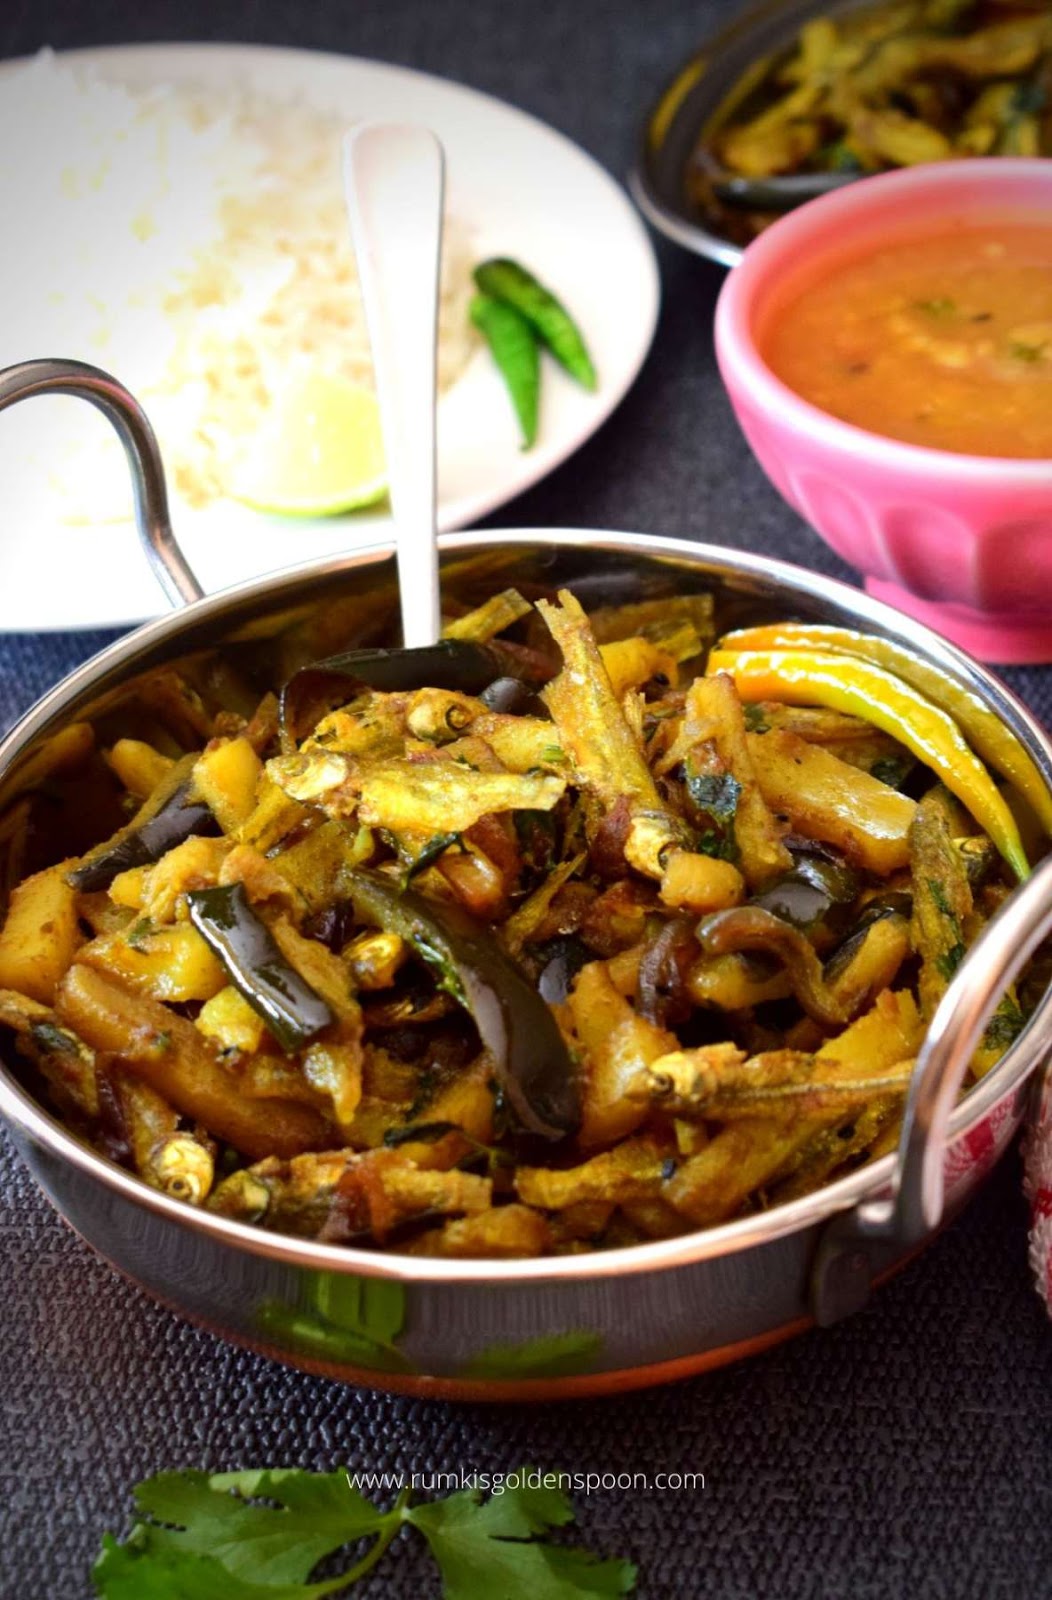 mourala fish curry, mourala macher chorchori, mourala chorchori, mourala macher jhal, mourala macher recipe, morola macher recipe, mourola macher recipe, mourola macher bati chorchori, recipe for small fish, choti machli ki gravy, small fish curry, small fish curry recipe, how to make small fish curry, Bengali style fish curry, Bengali style fish curry recipe, recipe for fish curry Bengali style, recipe of fish curry Bengali style, fish curry recipe, fish curries, traditional bengali food, Bengali recipe fish, Bengali recipes fish, recipe for bengali fish curry, Bengali recipe for fish, Bengali recipe of fish, how to make mourala macher chorchori, Rumki's Golden Spoon